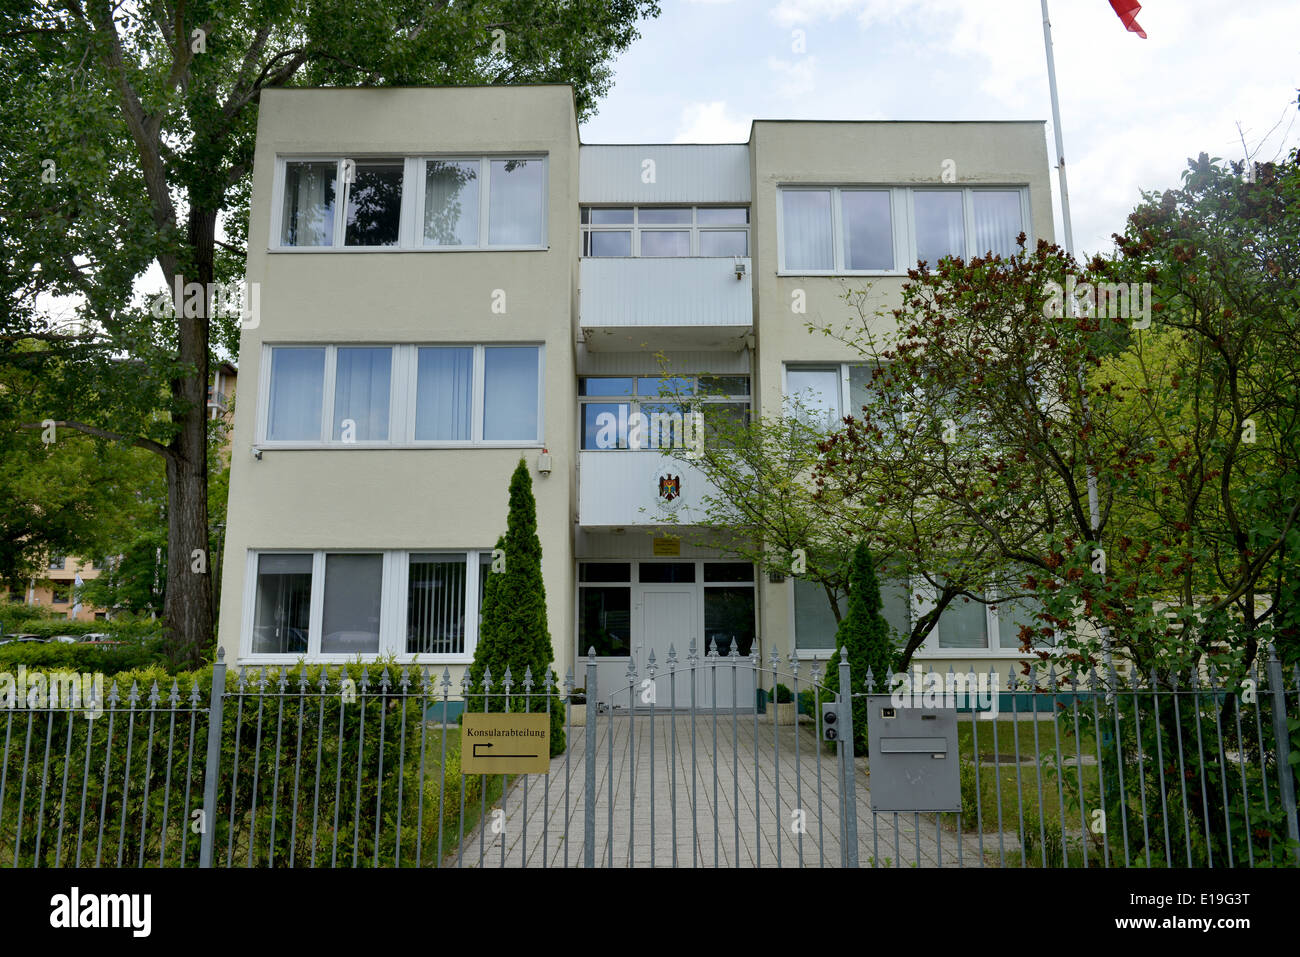 Botschaft Republik Moldau, Stavangerstrasse, Pankow, Berlin, Deutschland Stock Photo